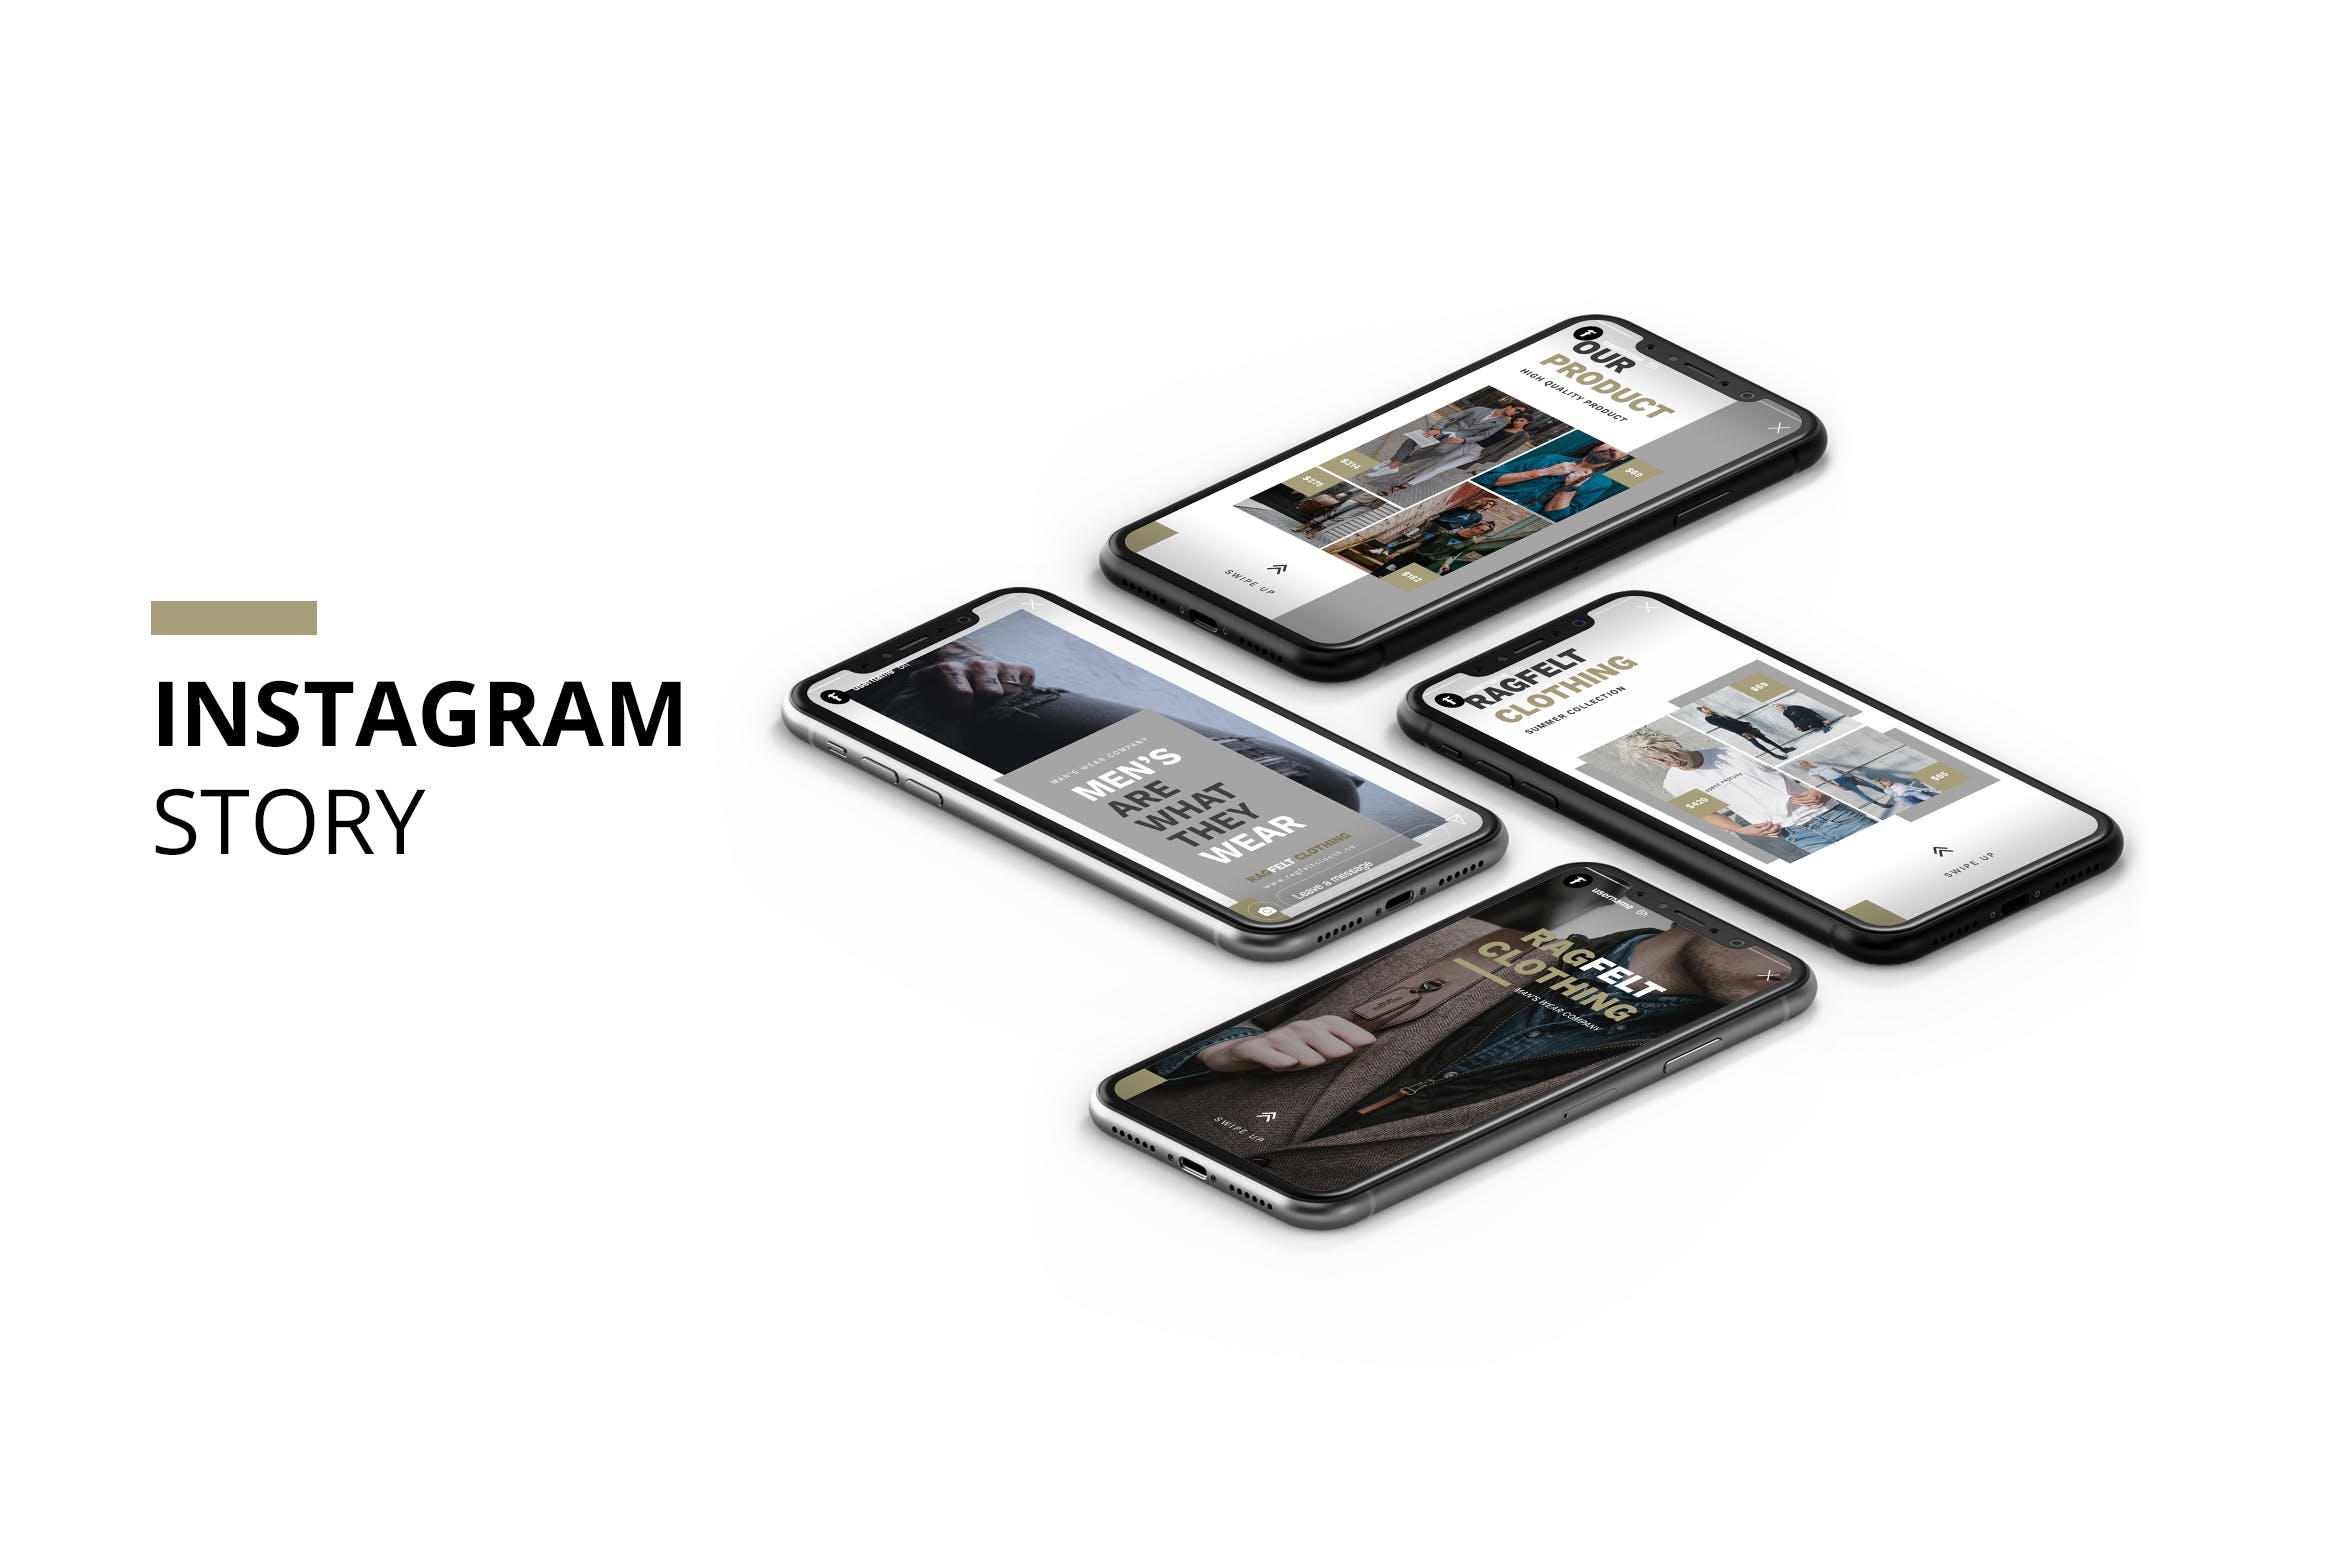 时尚男装推广Instagram品牌故事设计模板蚂蚁素材精选 Ragfelt Man Fashion Instagram Story插图